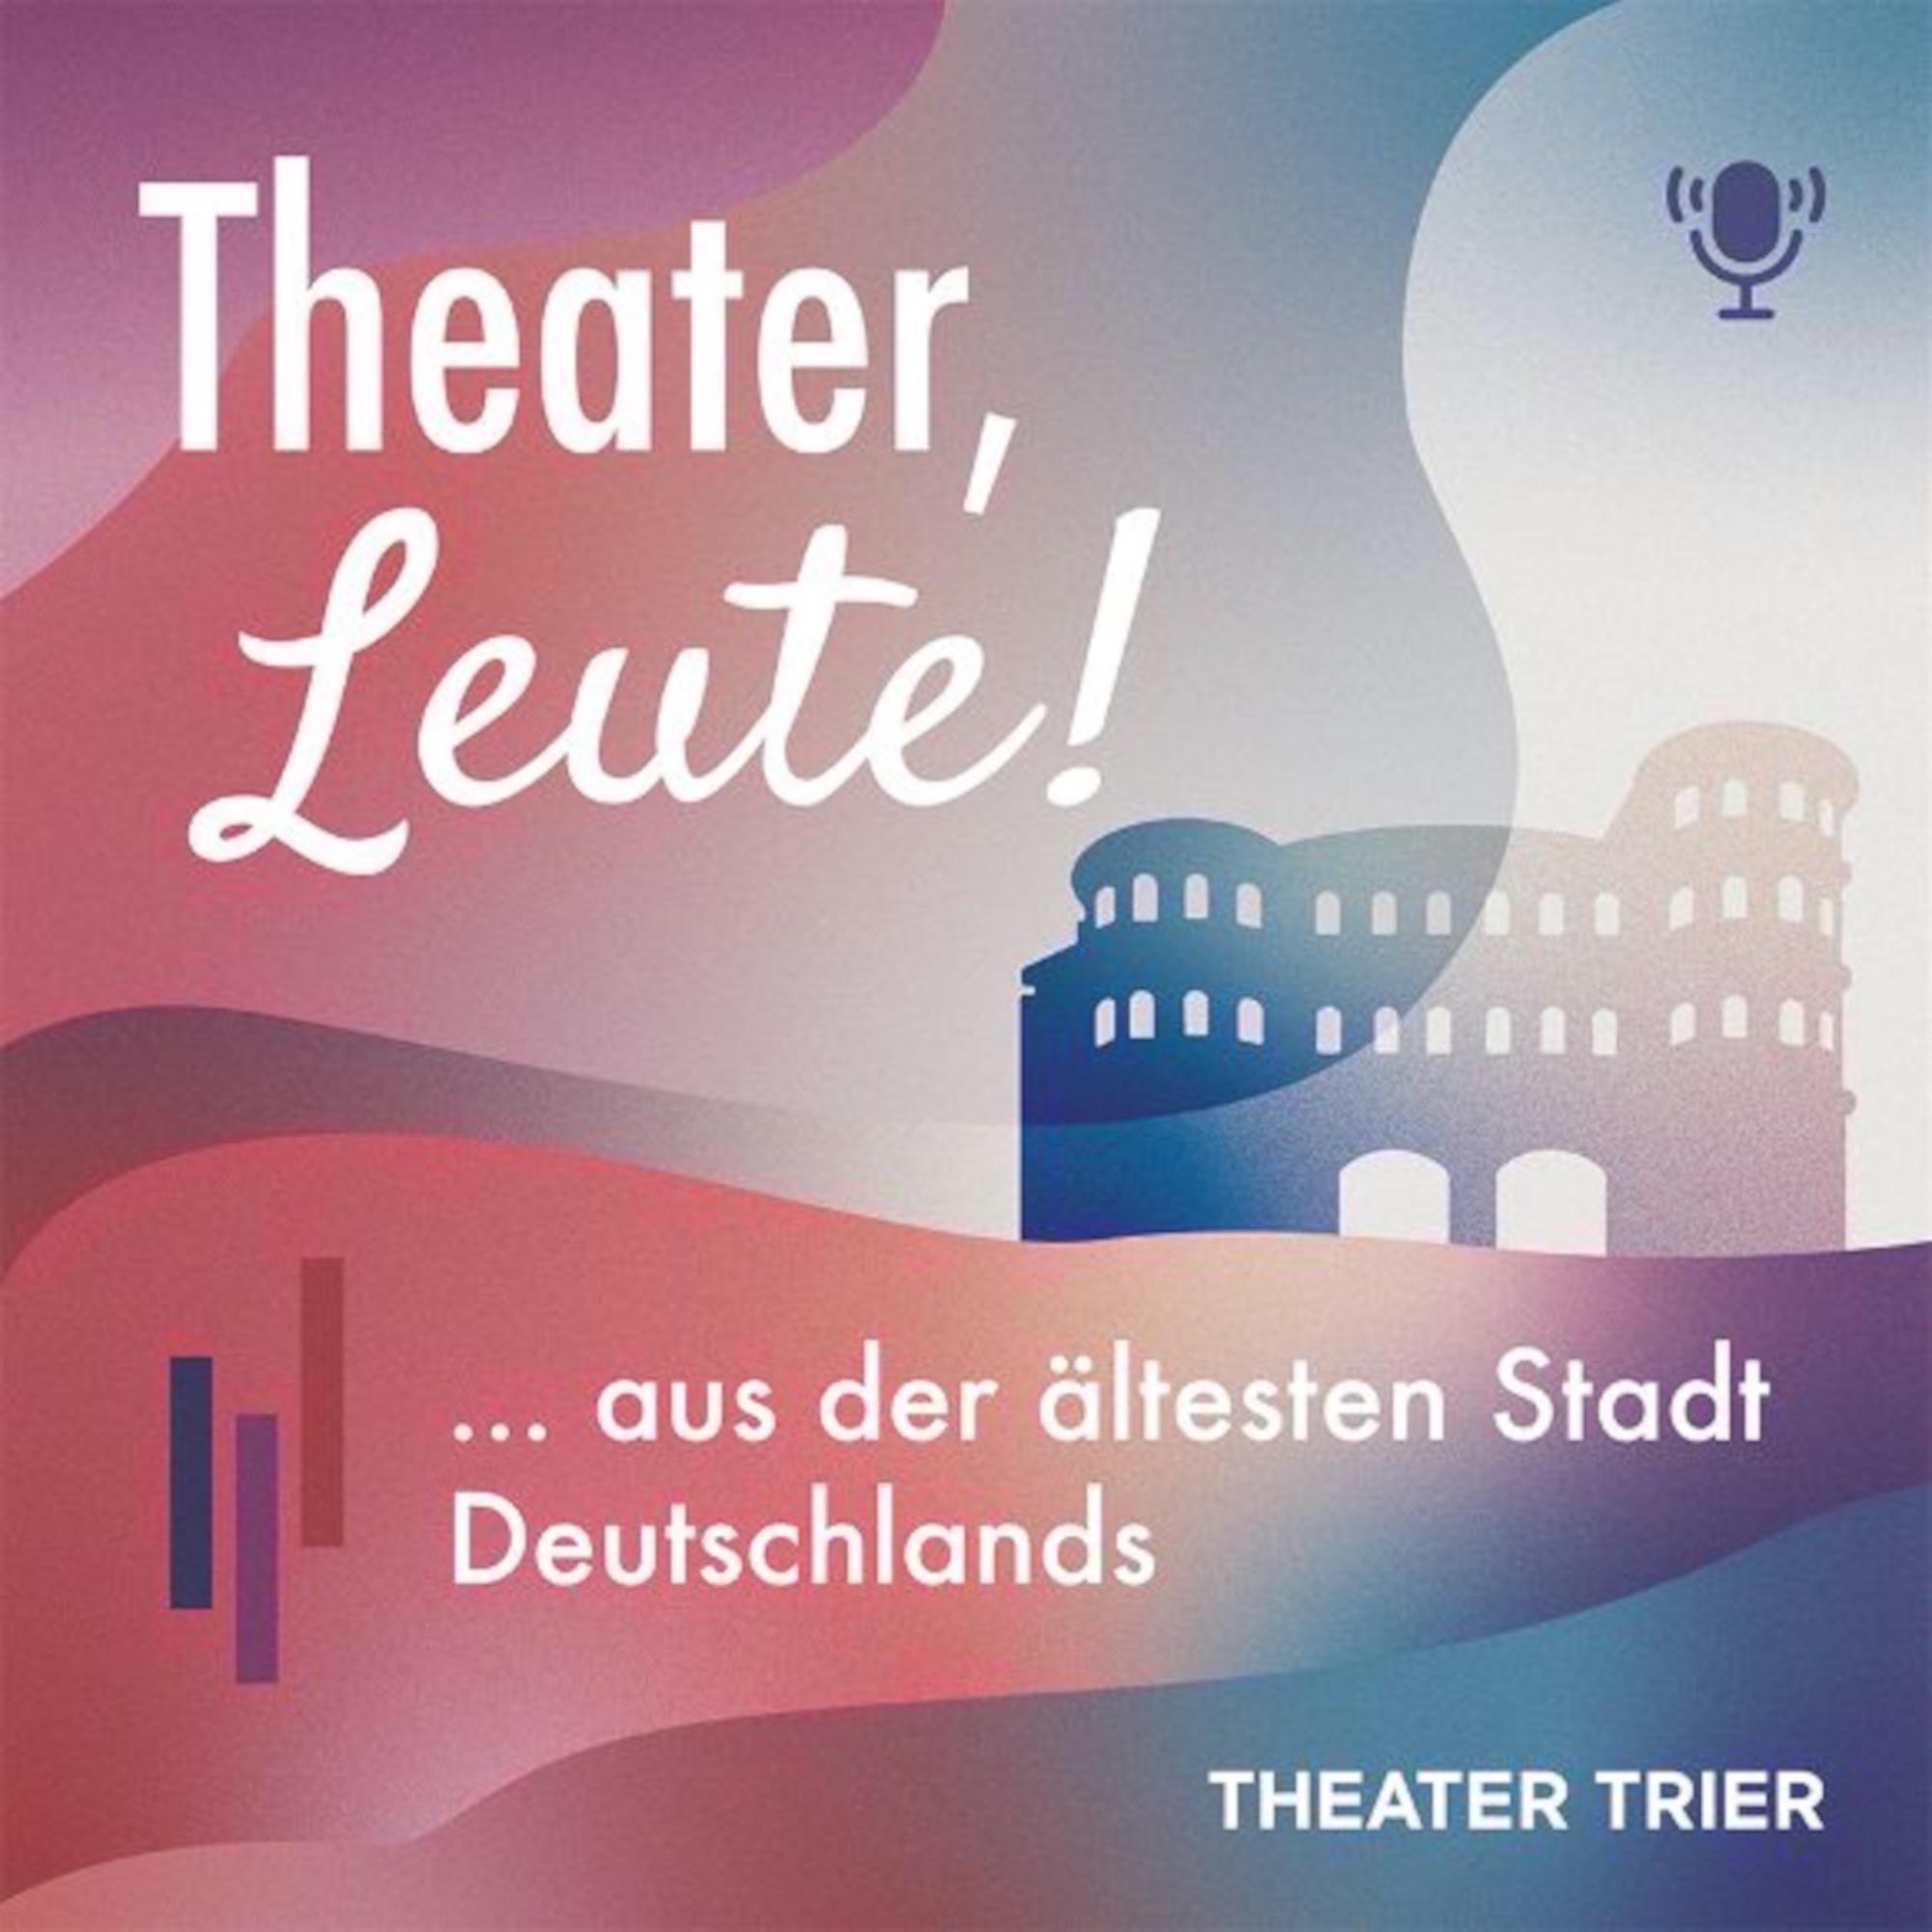 Theater, Leute! - aus der ältesten Stadt Deutschlands